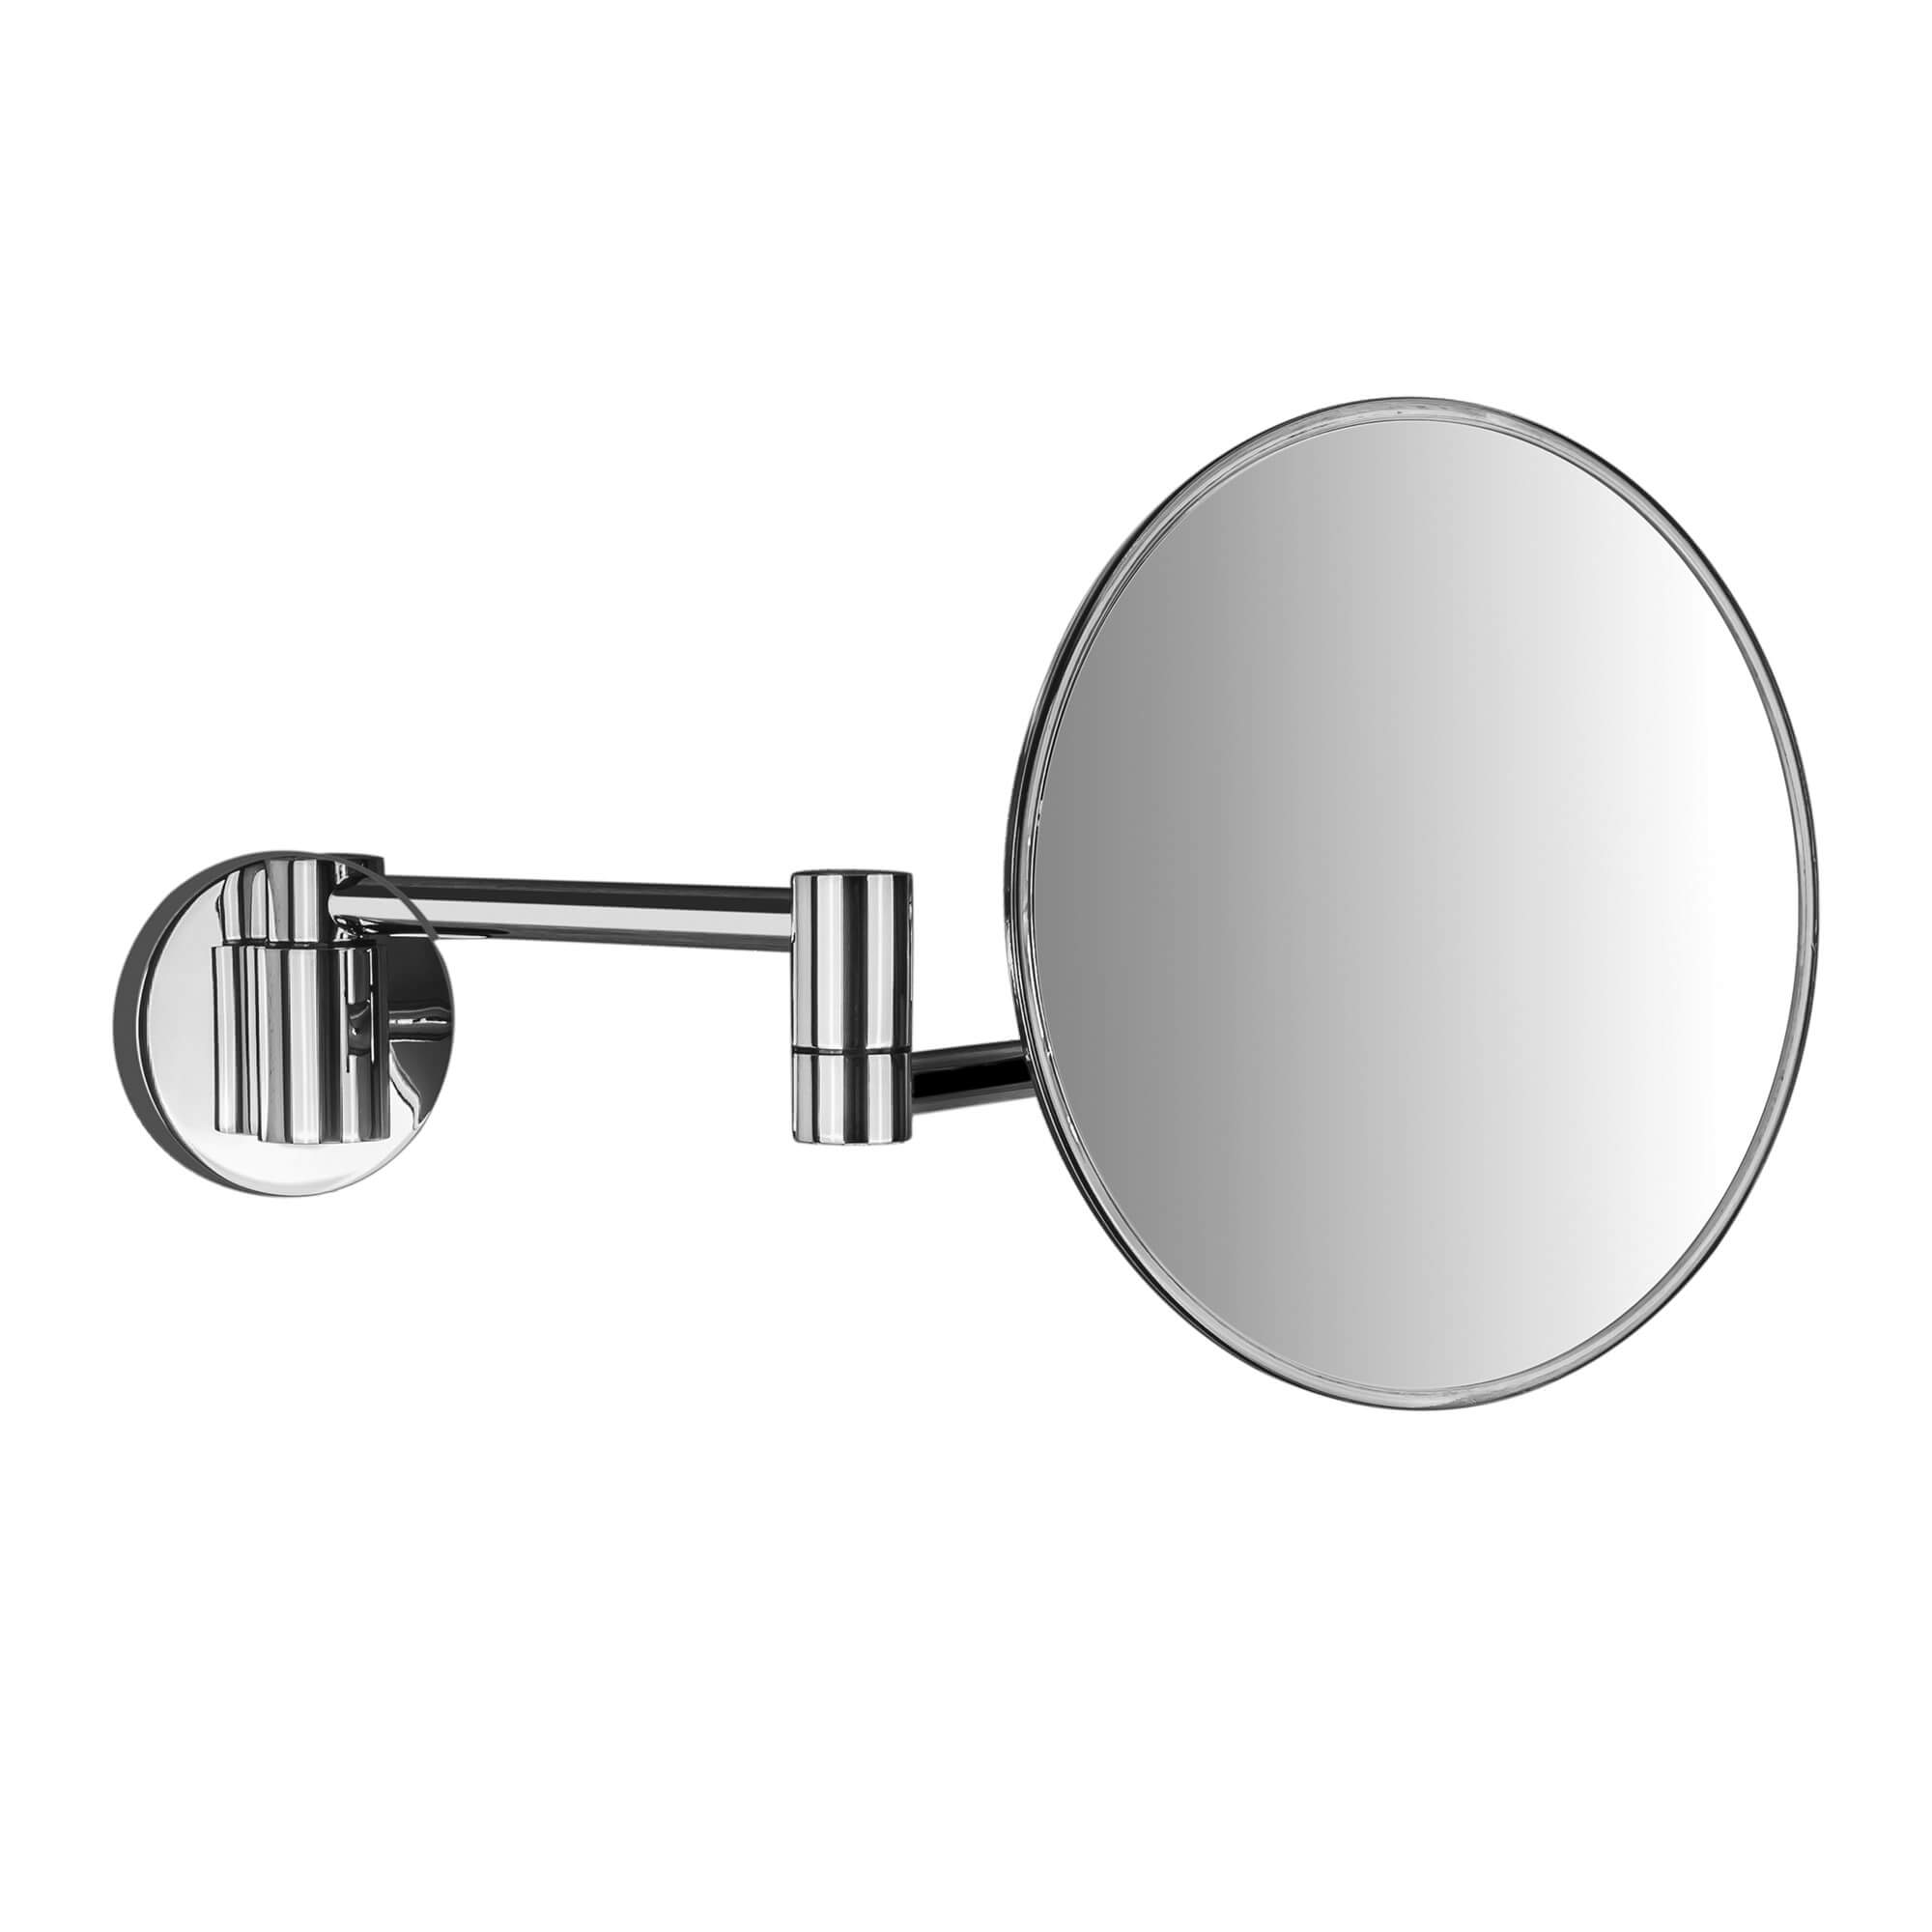 Colombo Design B97520CR Specchio da appoggio, regolabile in